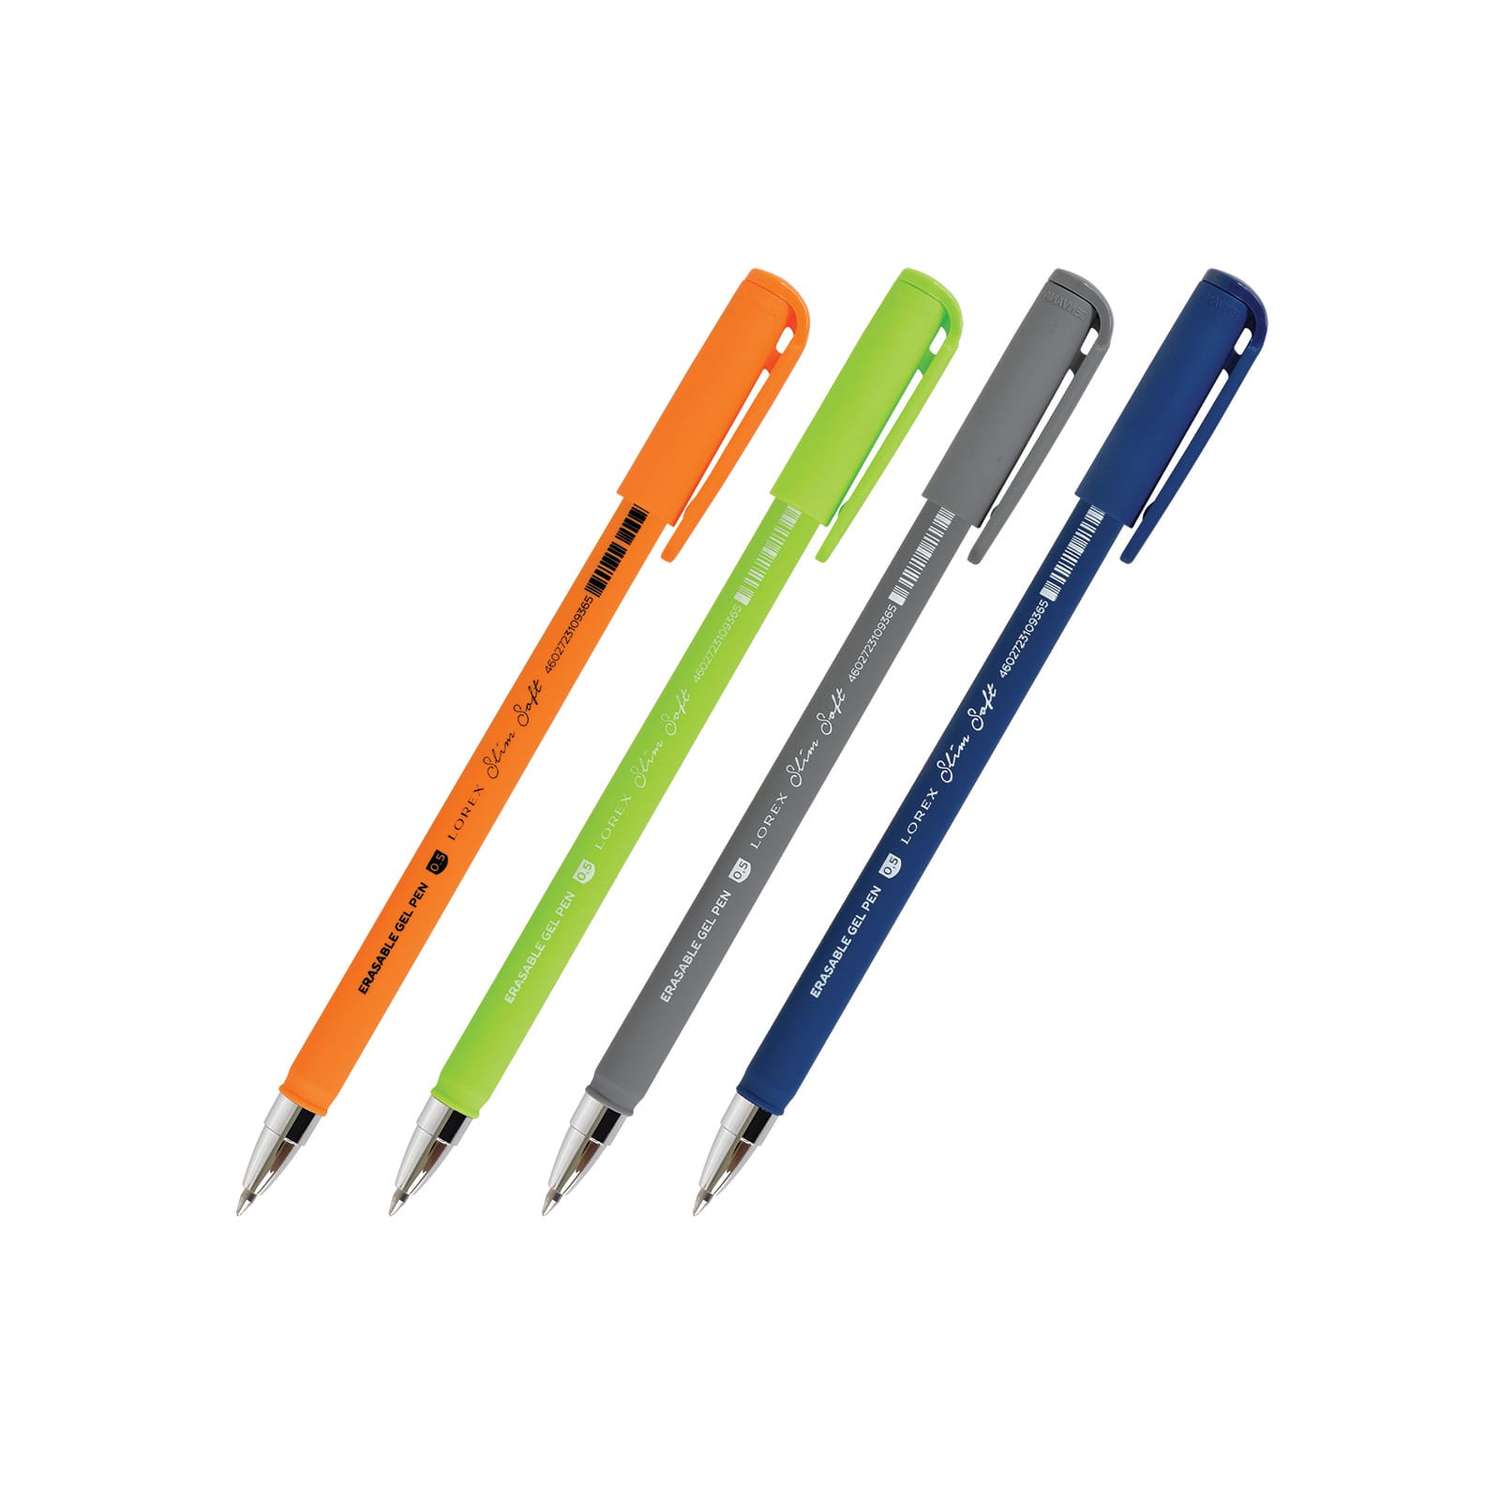 Ручки гелевые в наборе Lorex Stationery серия Slim Soft 0.5 мм 4 шт пиши стирай круглый прорезиненный корпус ассорти - фото 1